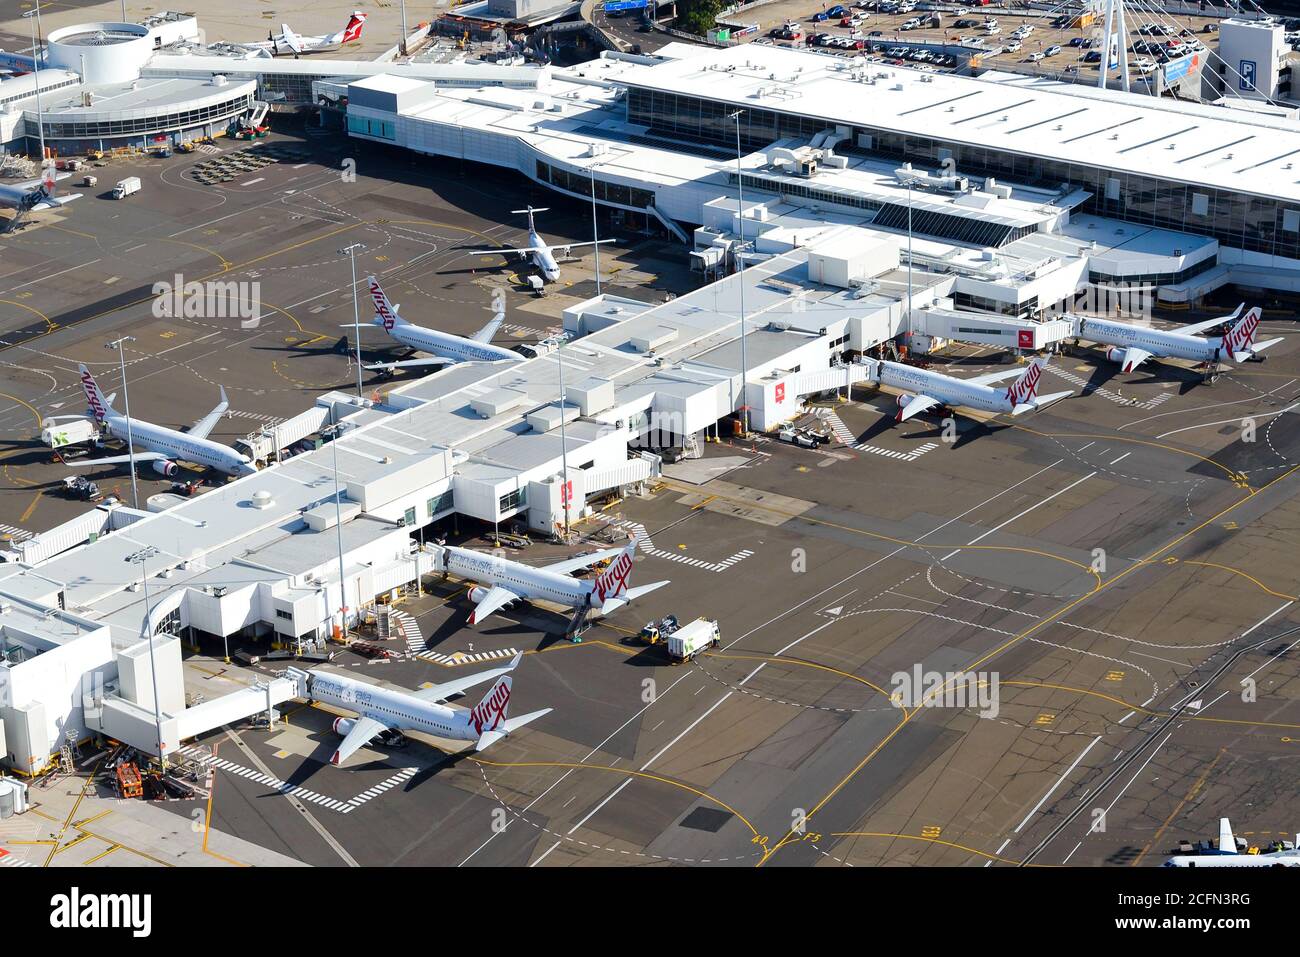 Virgin Australia Inlandsterminal 2 am Flughafen Sydney, Australien. Passagierterminal mit mehreren 737 Flugzeugen. Inlandsflüge in Australien. Stockfoto